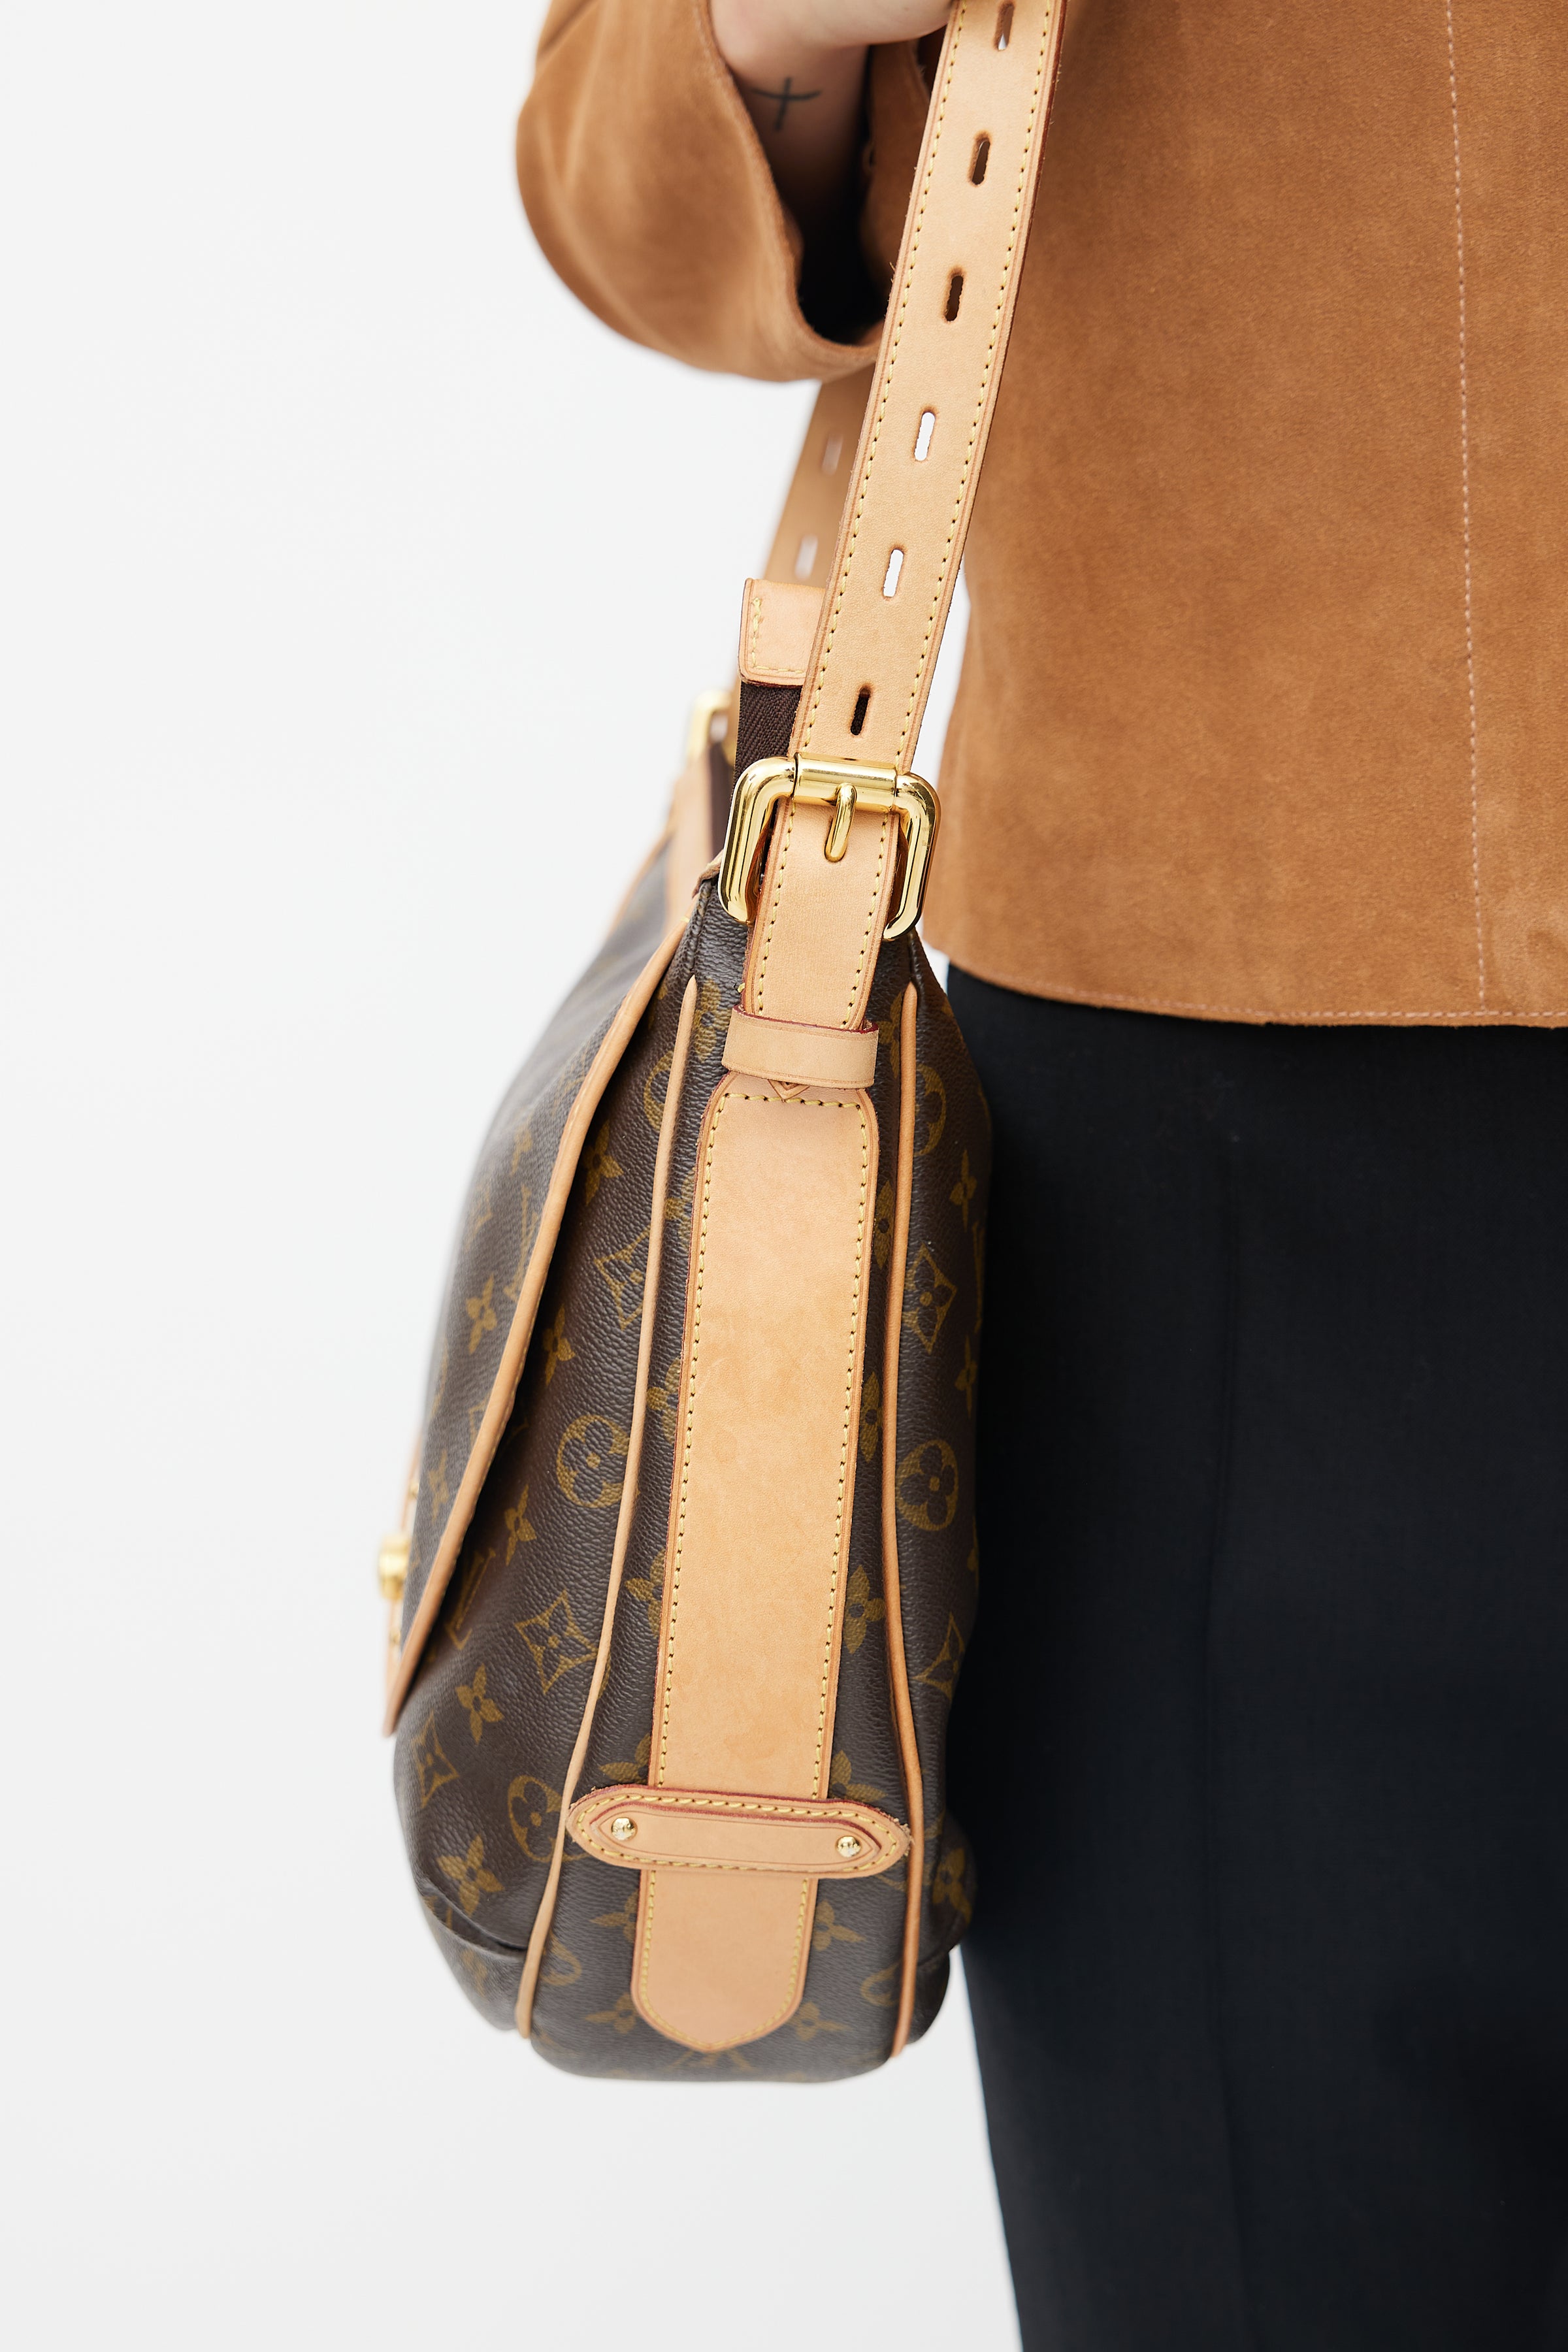 Authentic Louis Vuitton Monogram Menilmontant PM Crossbody Handbag M40474